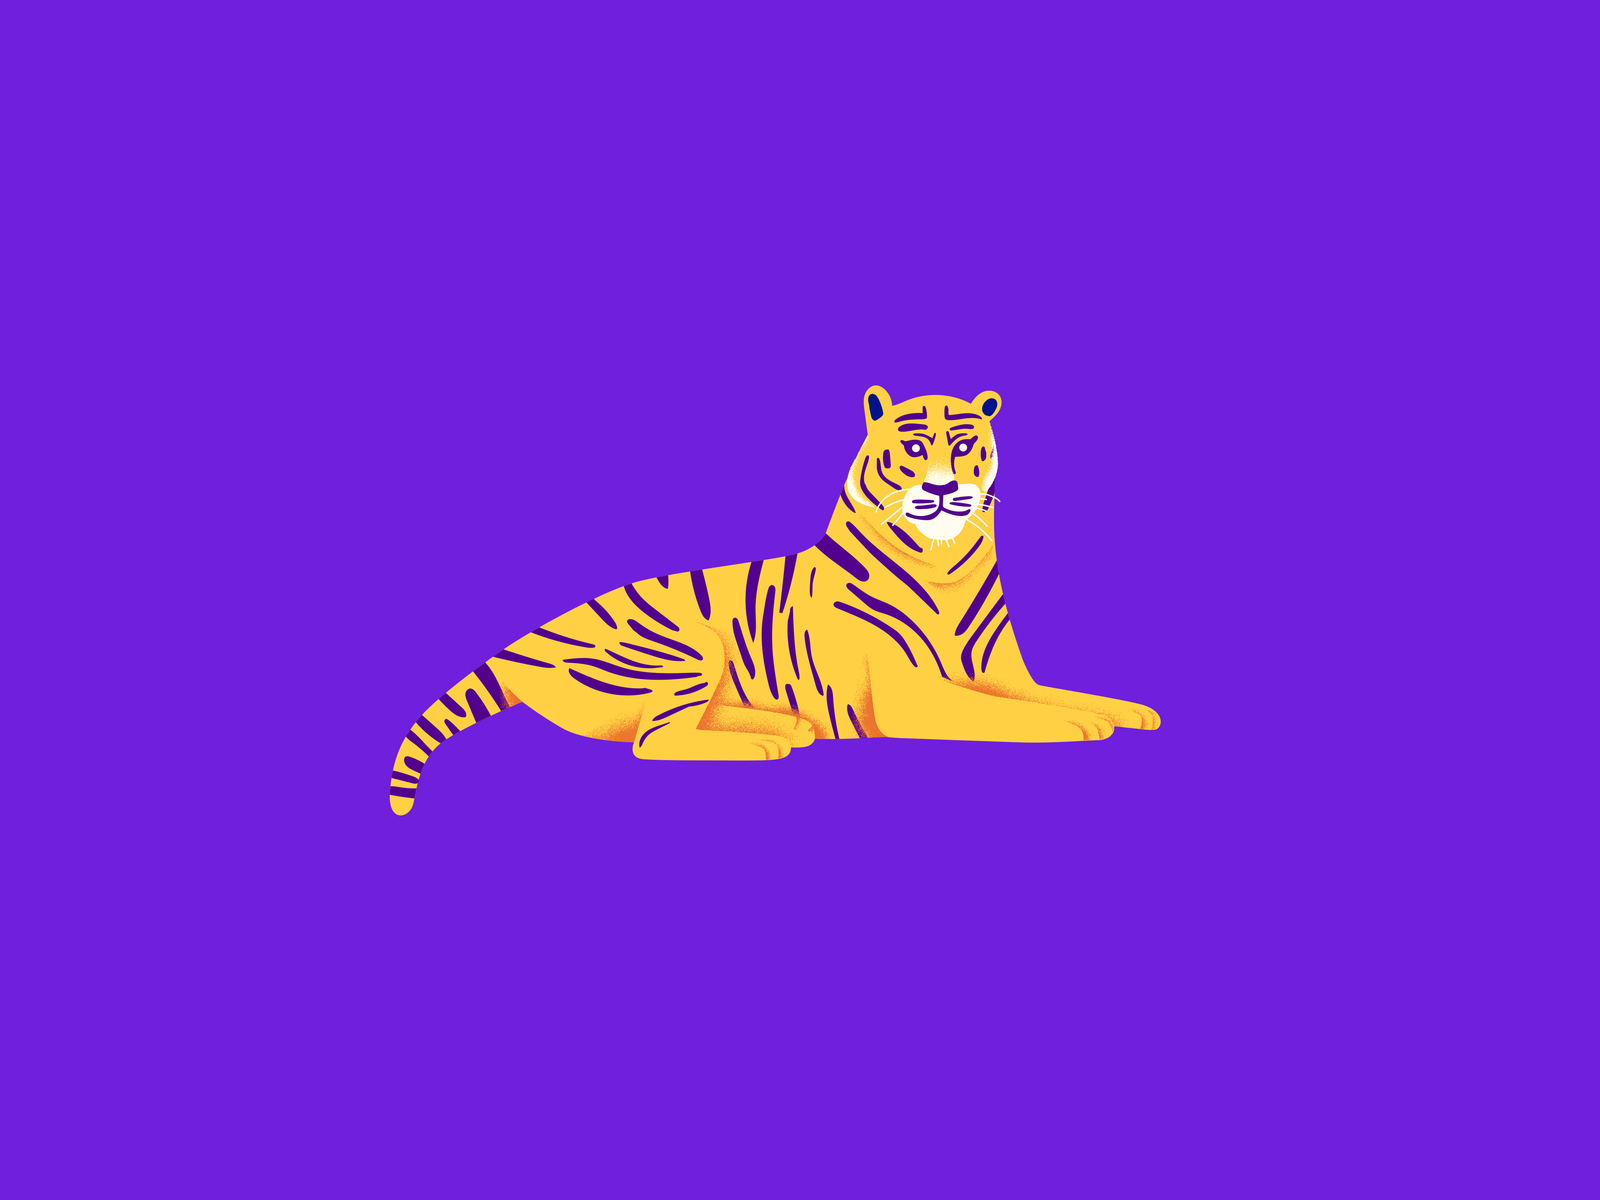 Tiger by vivek n on Dribbble